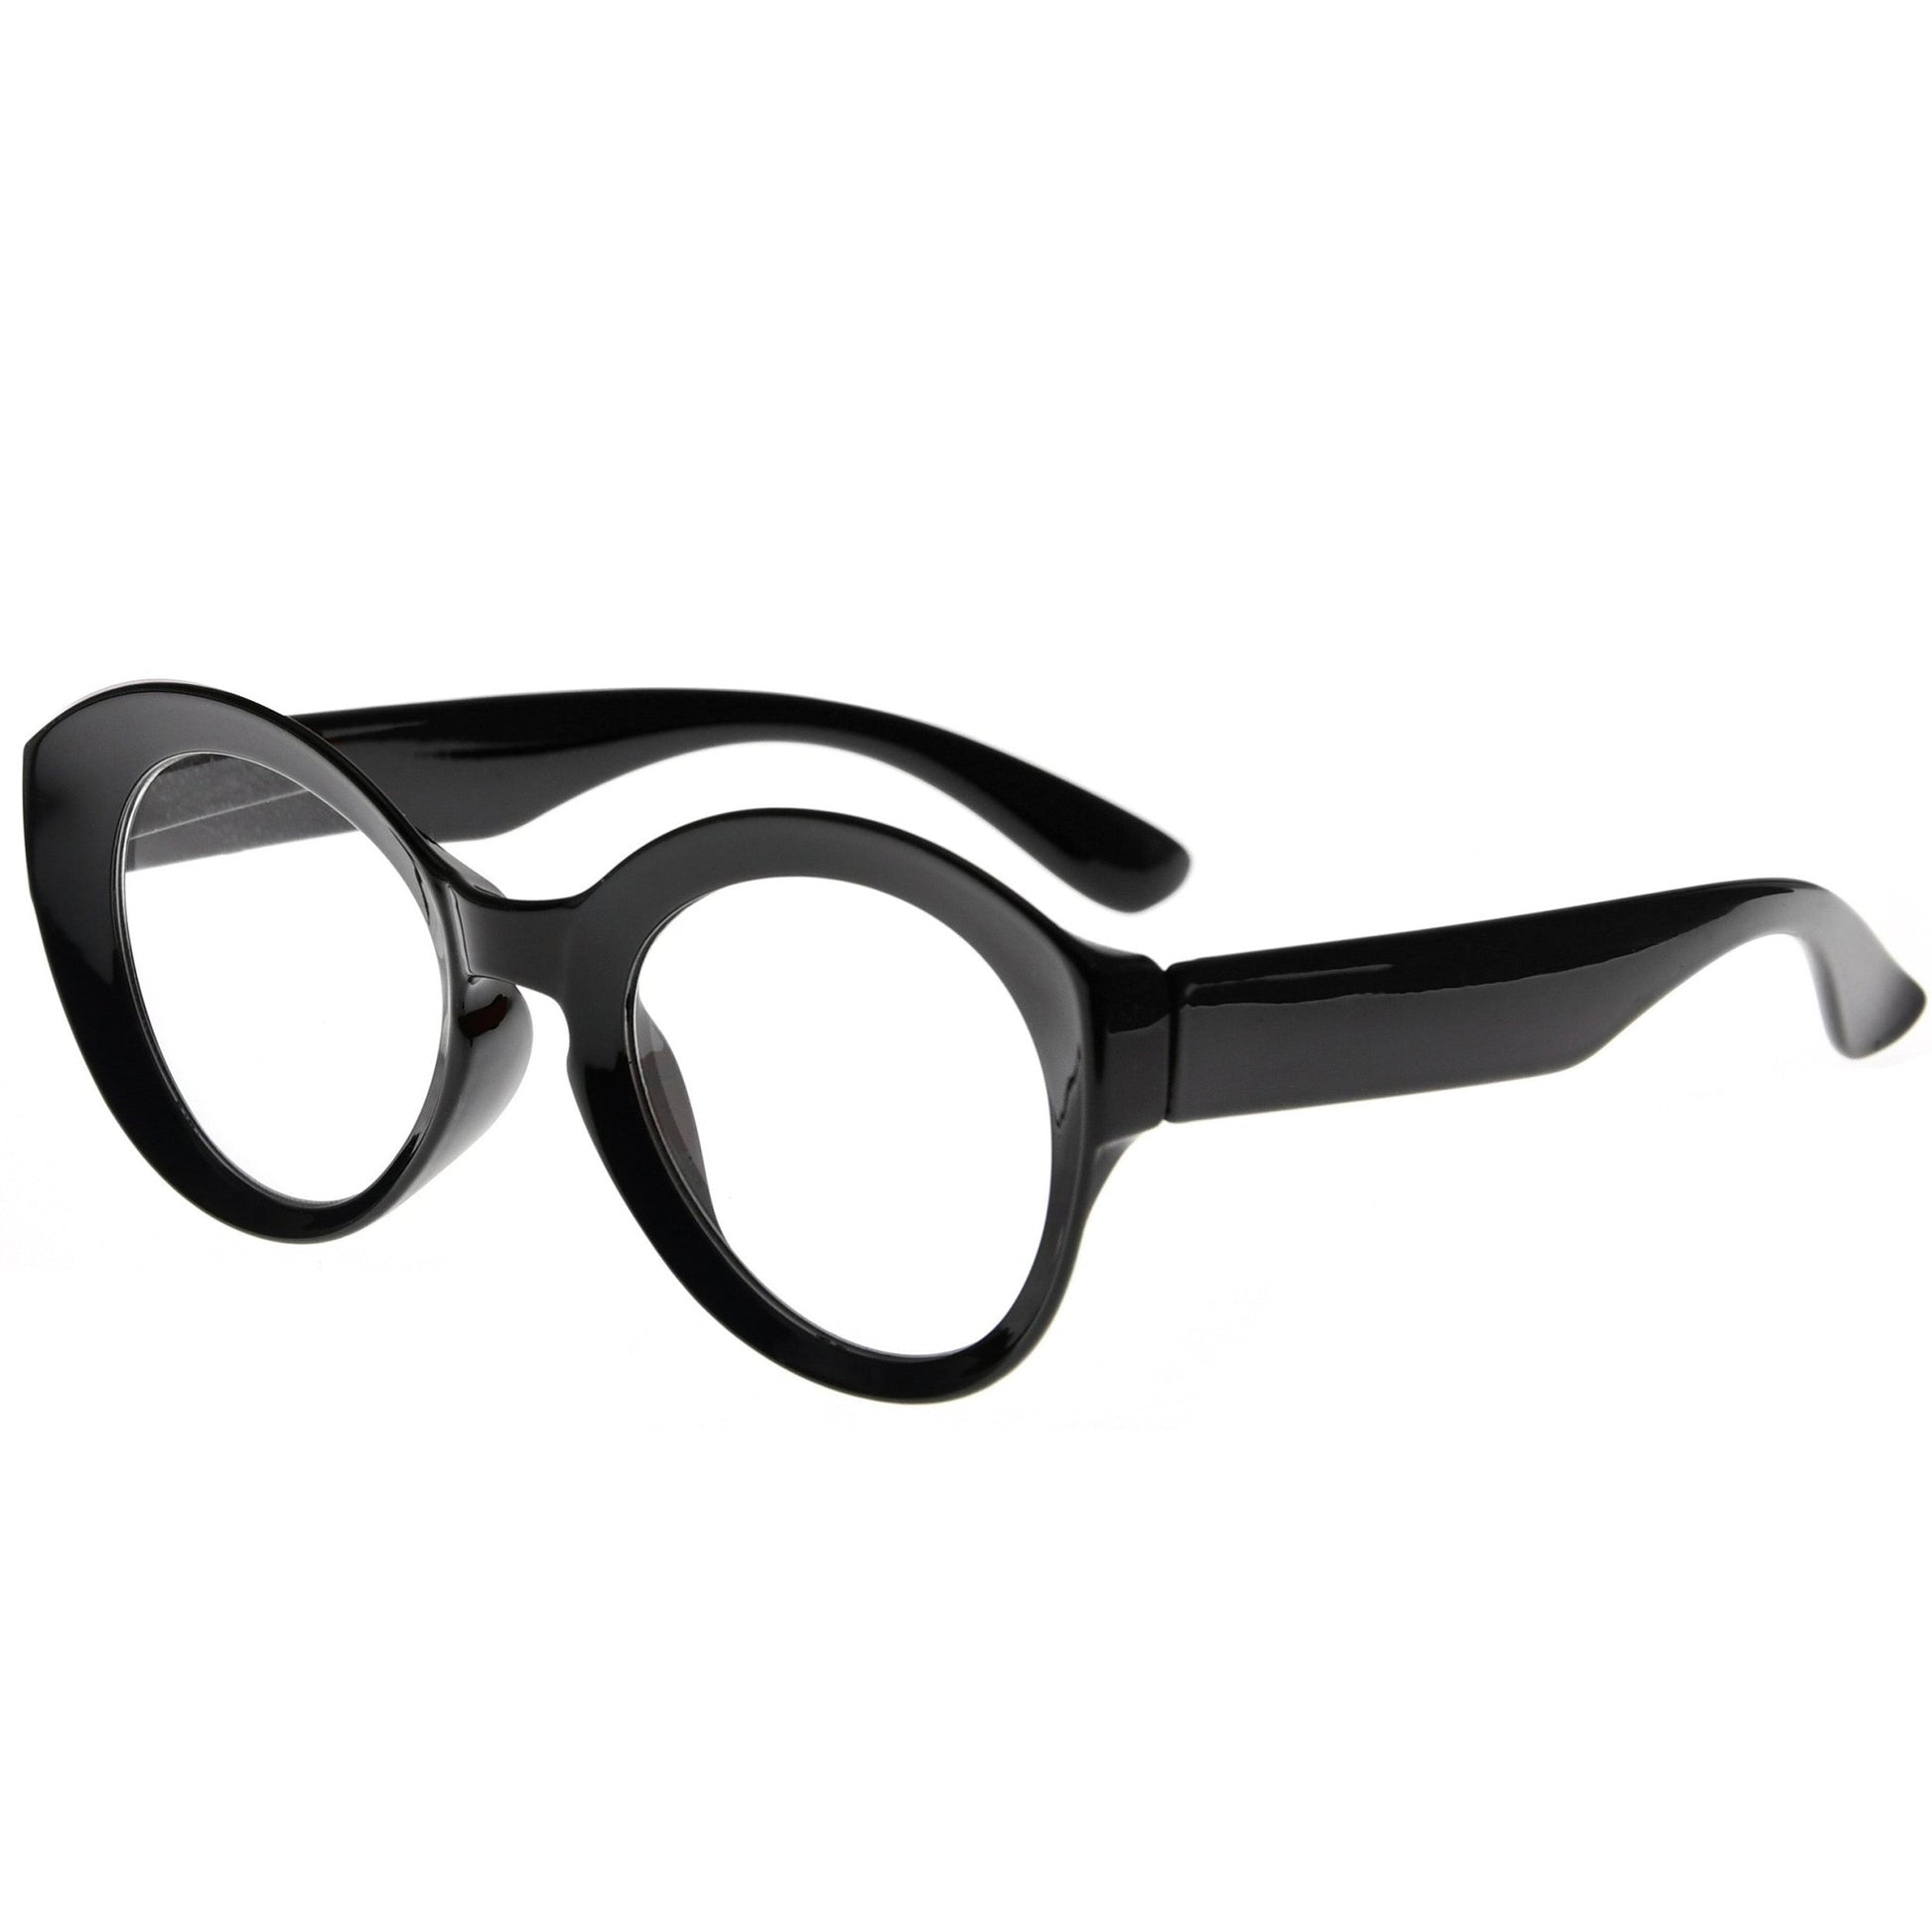 Eyeglass Frames Women Black, Thick Black Frame Glasses